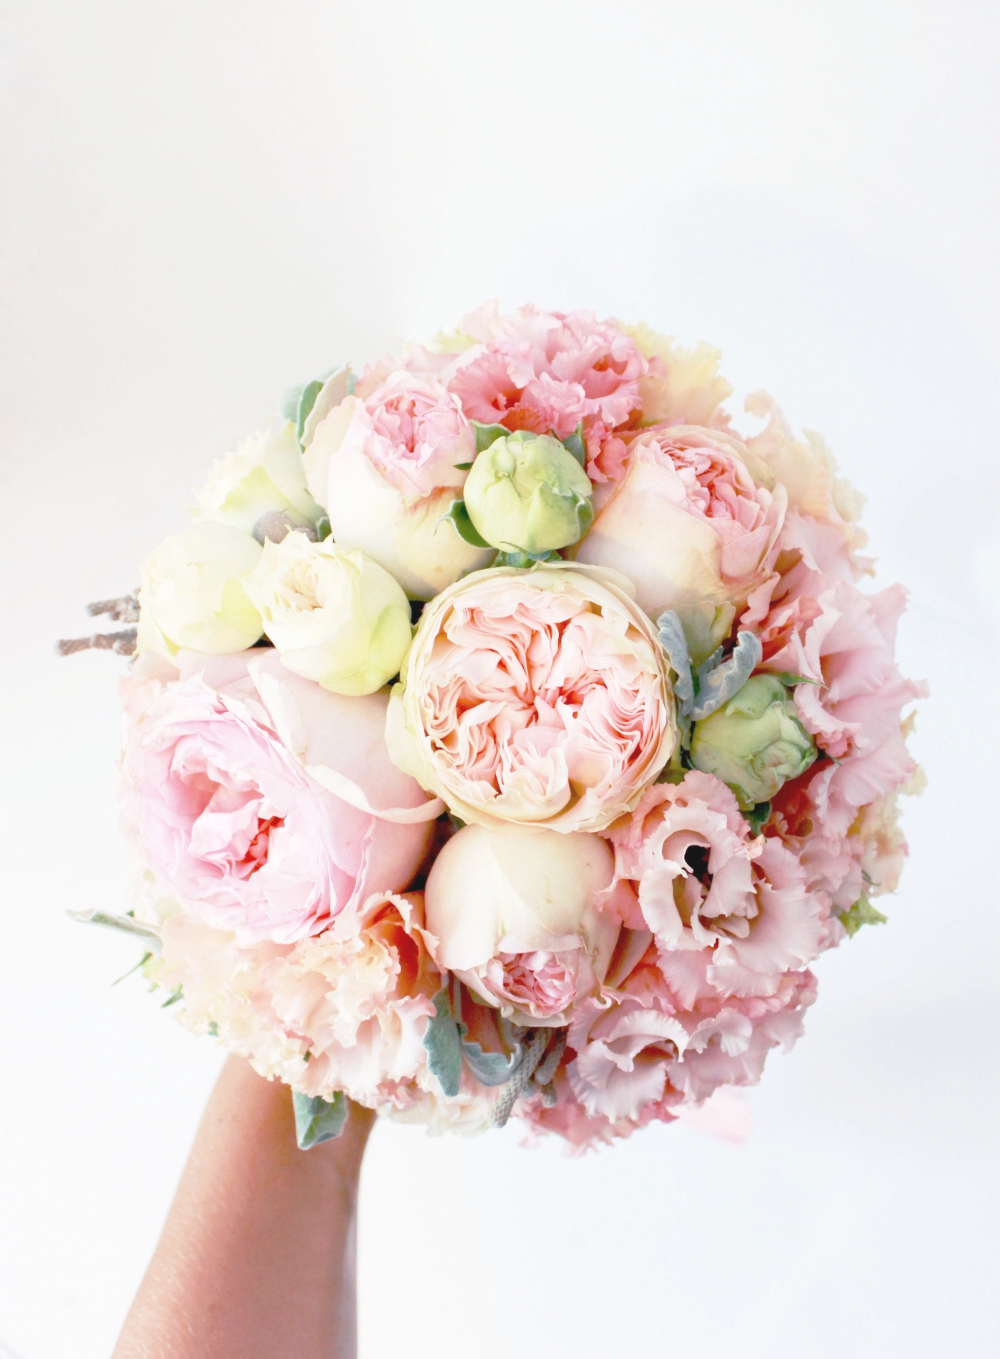 Вкусный букет для невесты Ирины
florist: Надежда Бобровская